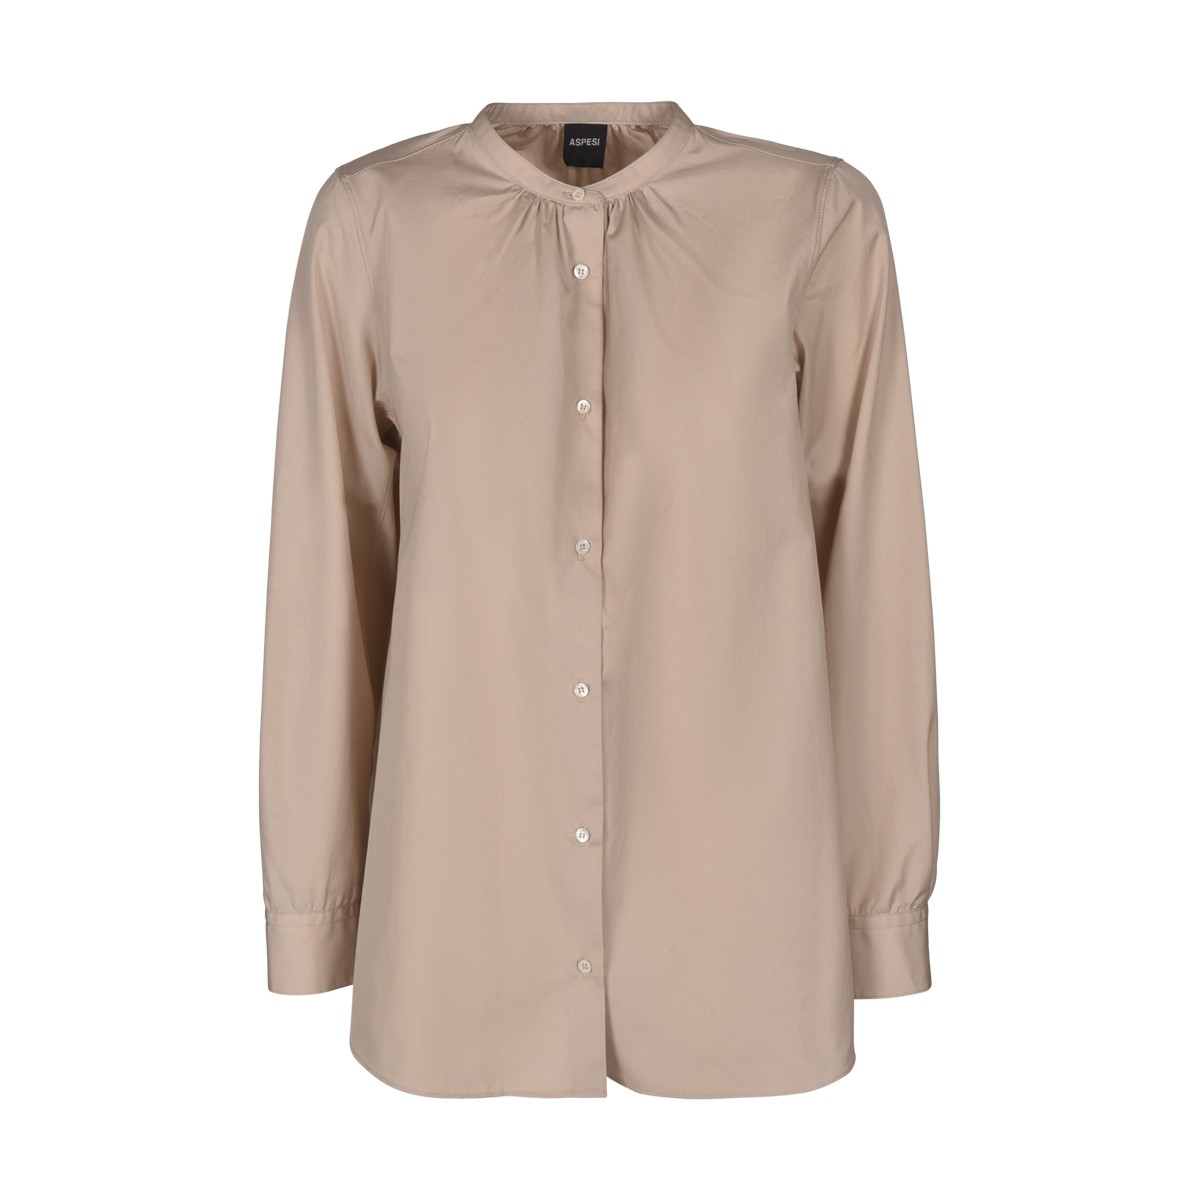 Beige cotton long-sleeved shirt